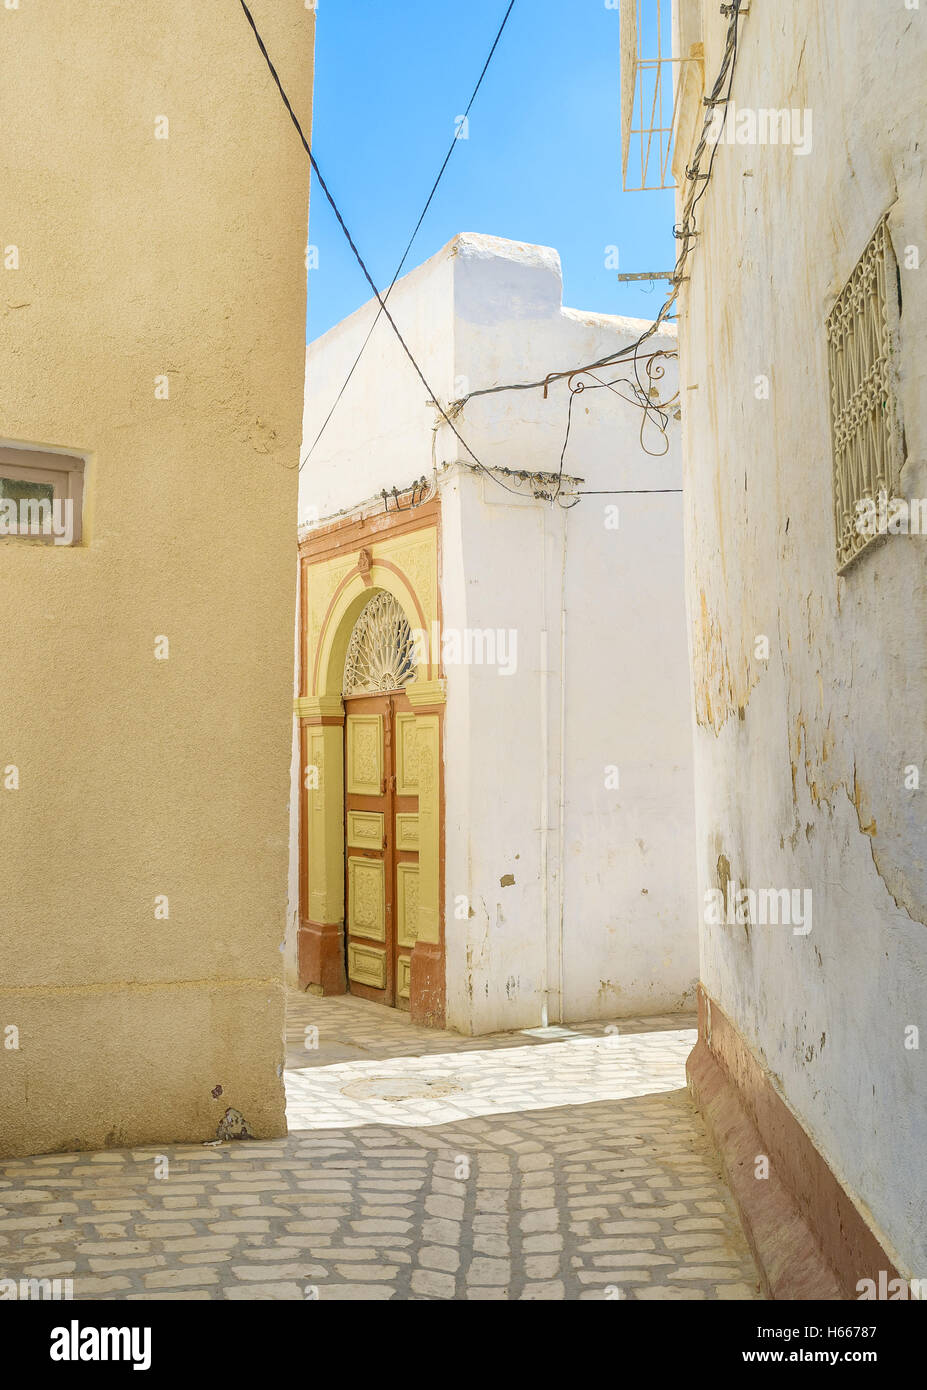 The tiny homes of Medina in Kairouan, Tunisia. Stock Photo